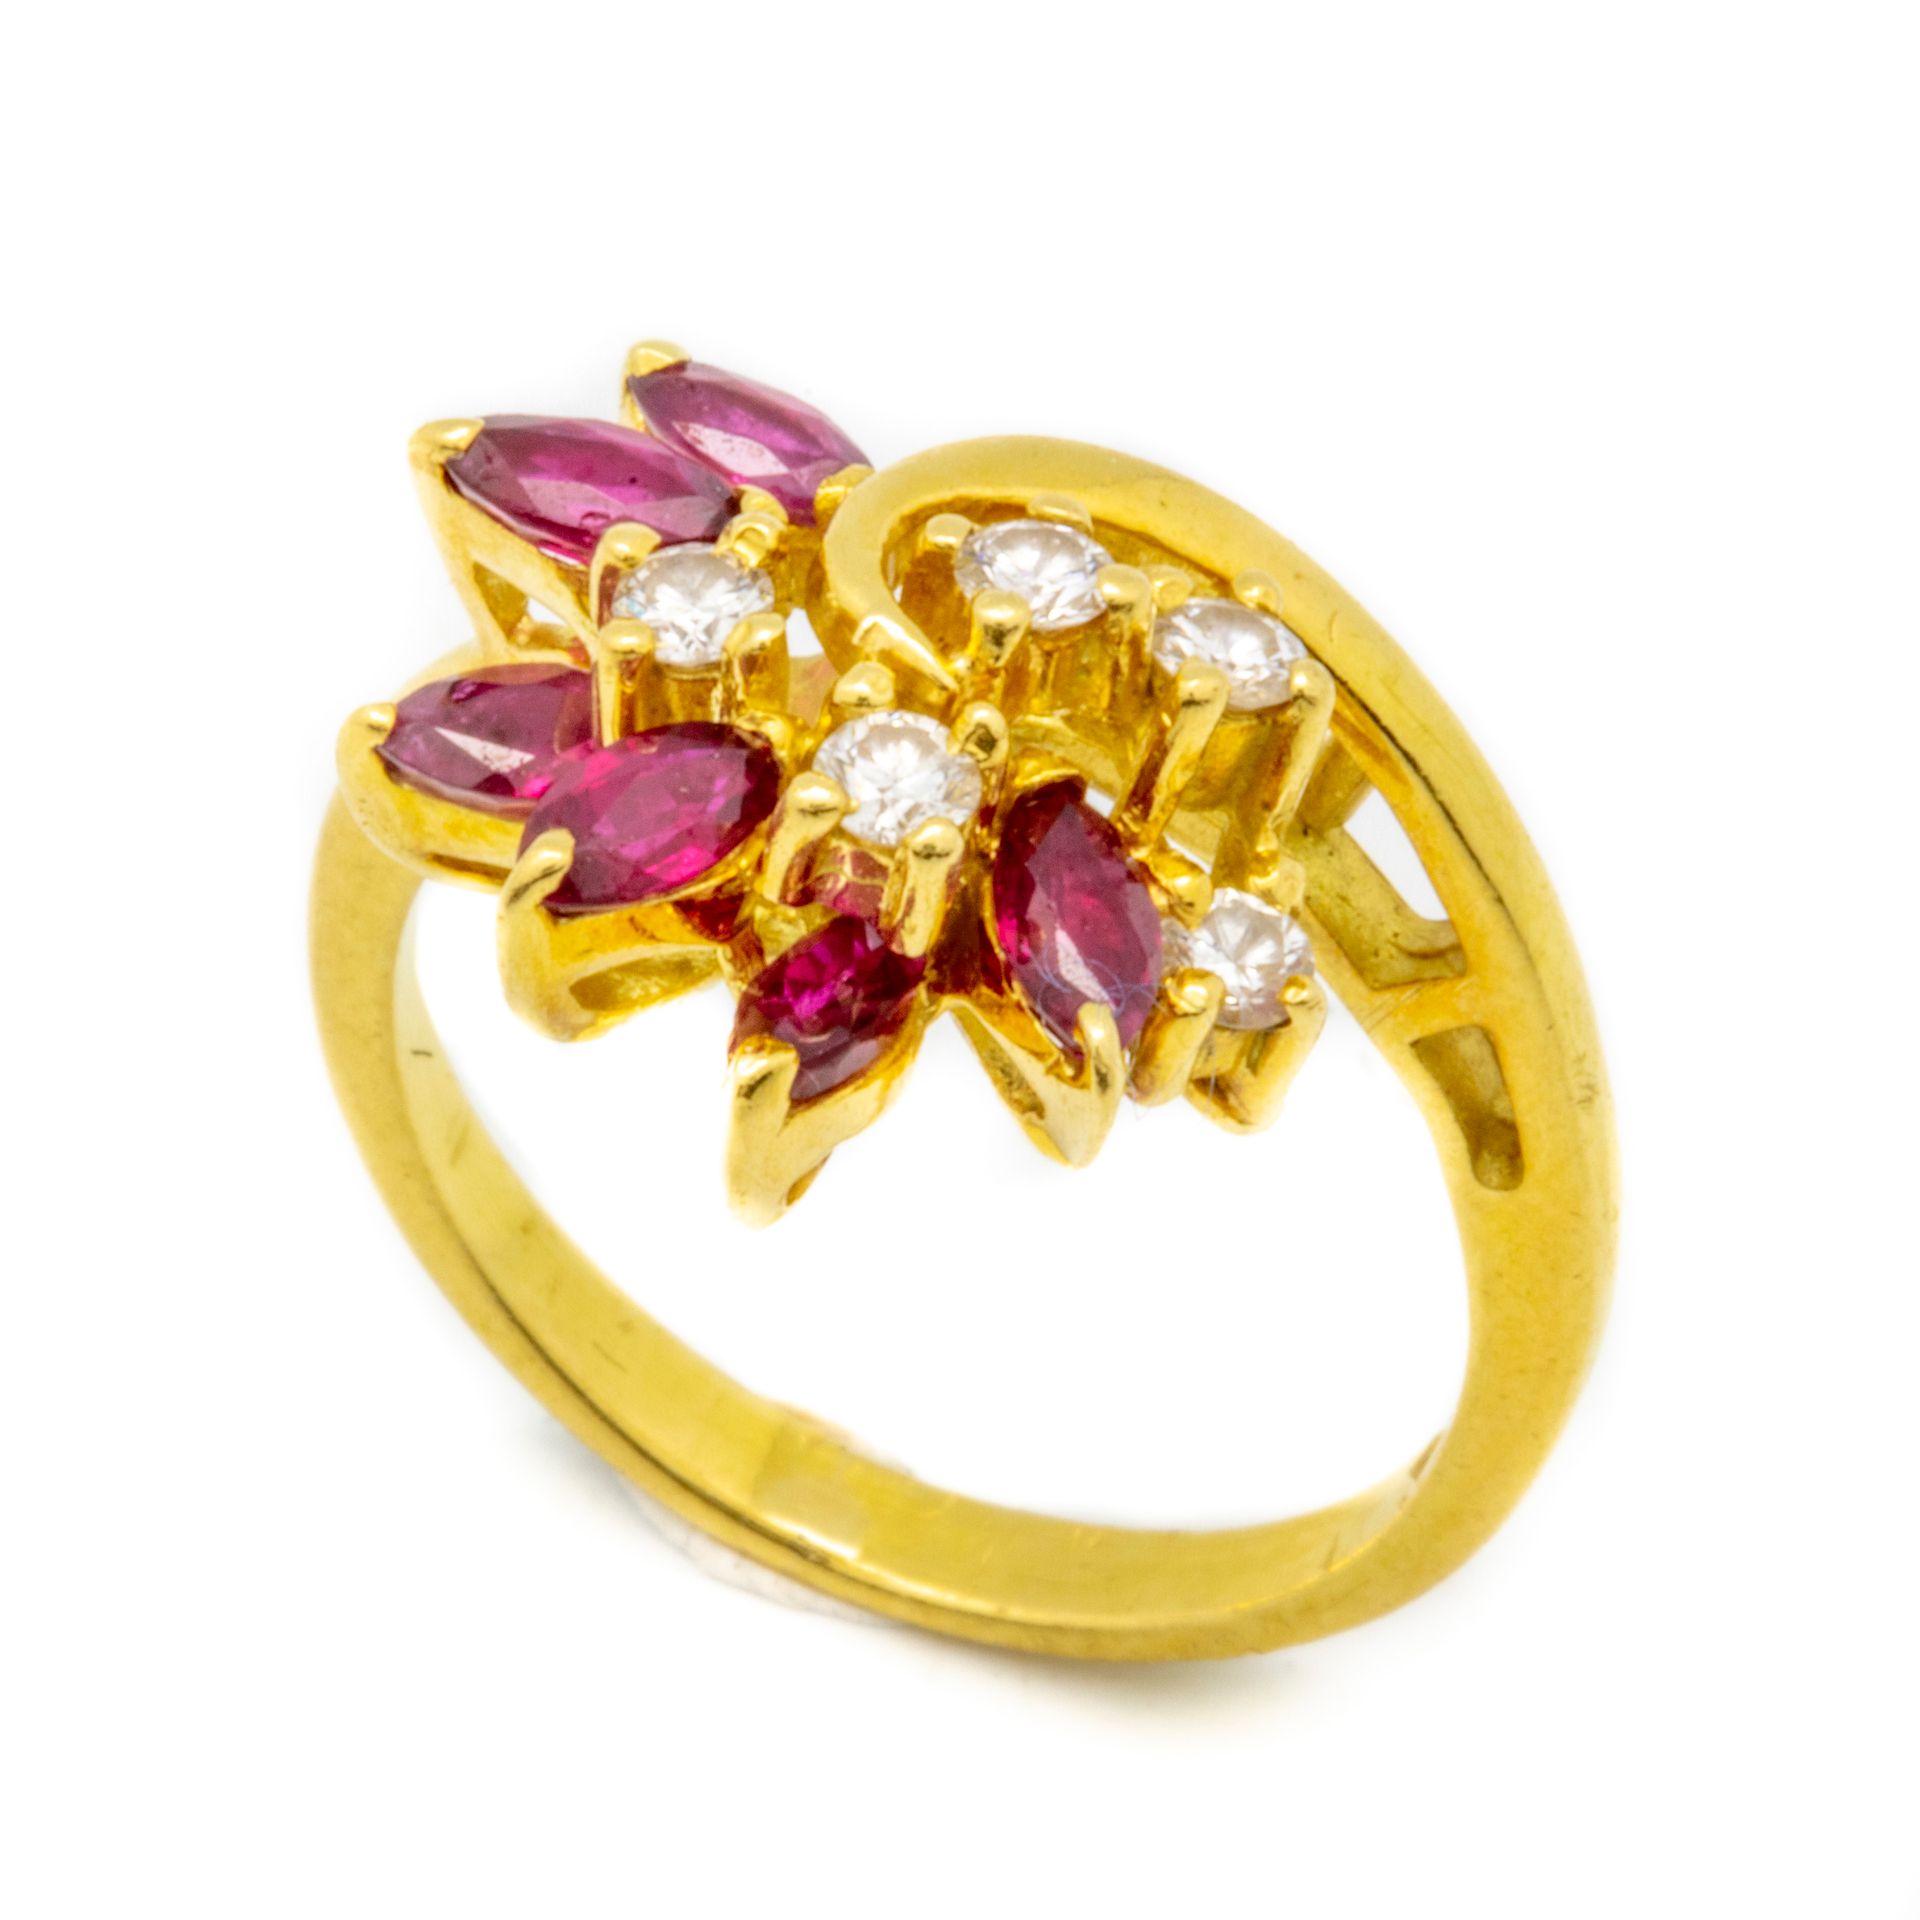 Null Bague en or jaune ornée de petits diamants et rubis formant une fleur

Tail&hellip;